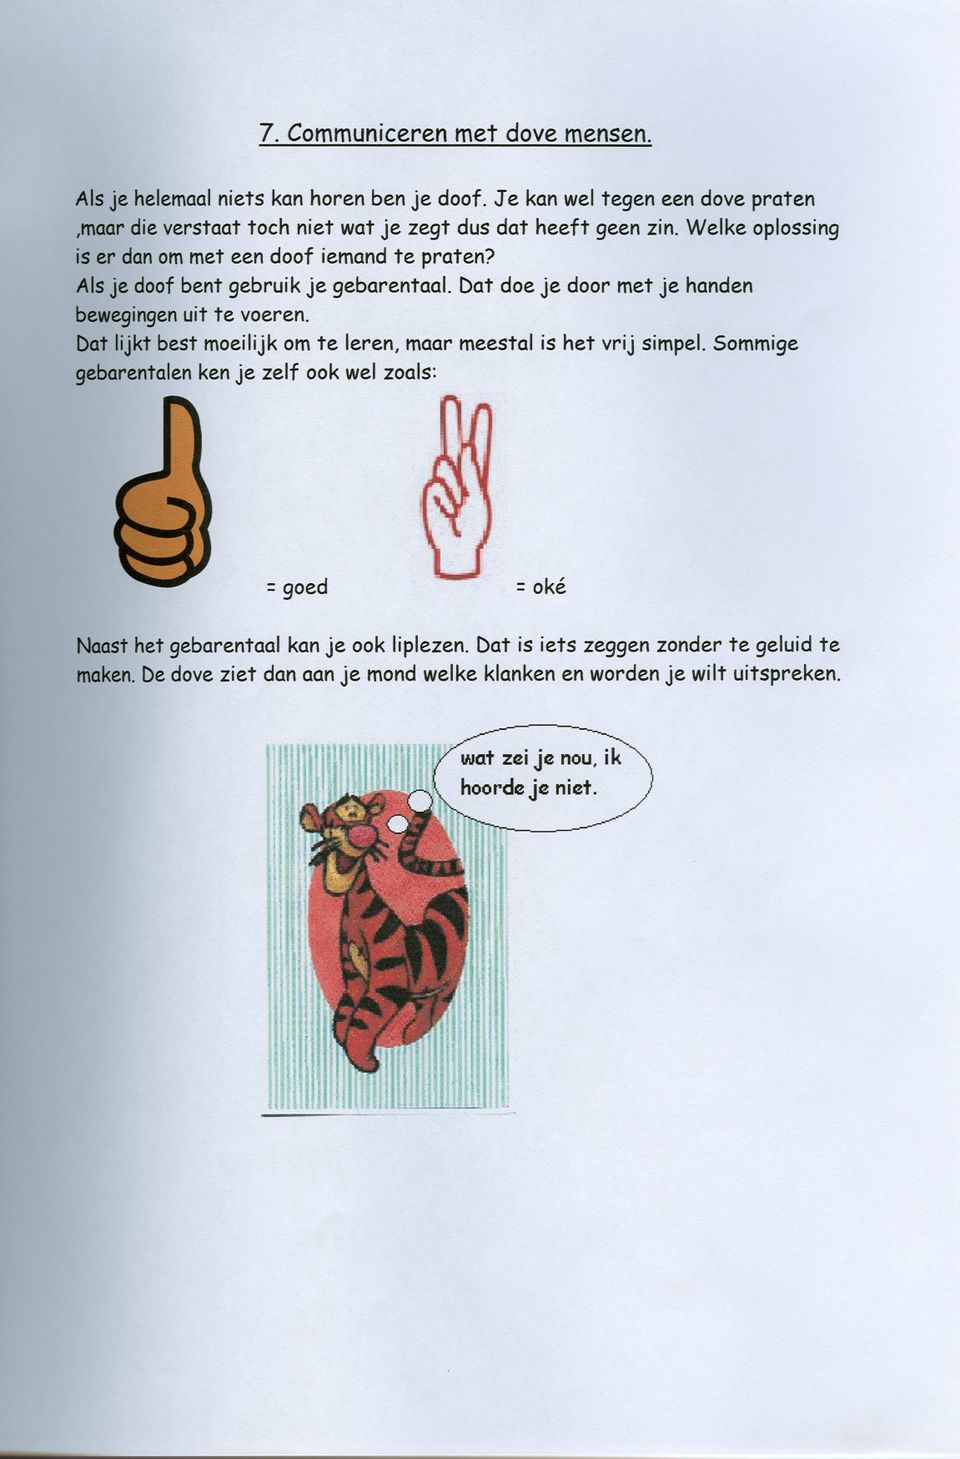 Als je doof bent gebruik je gebarentaal. Dat doe je door met je handen bewegingenuit te voeren.